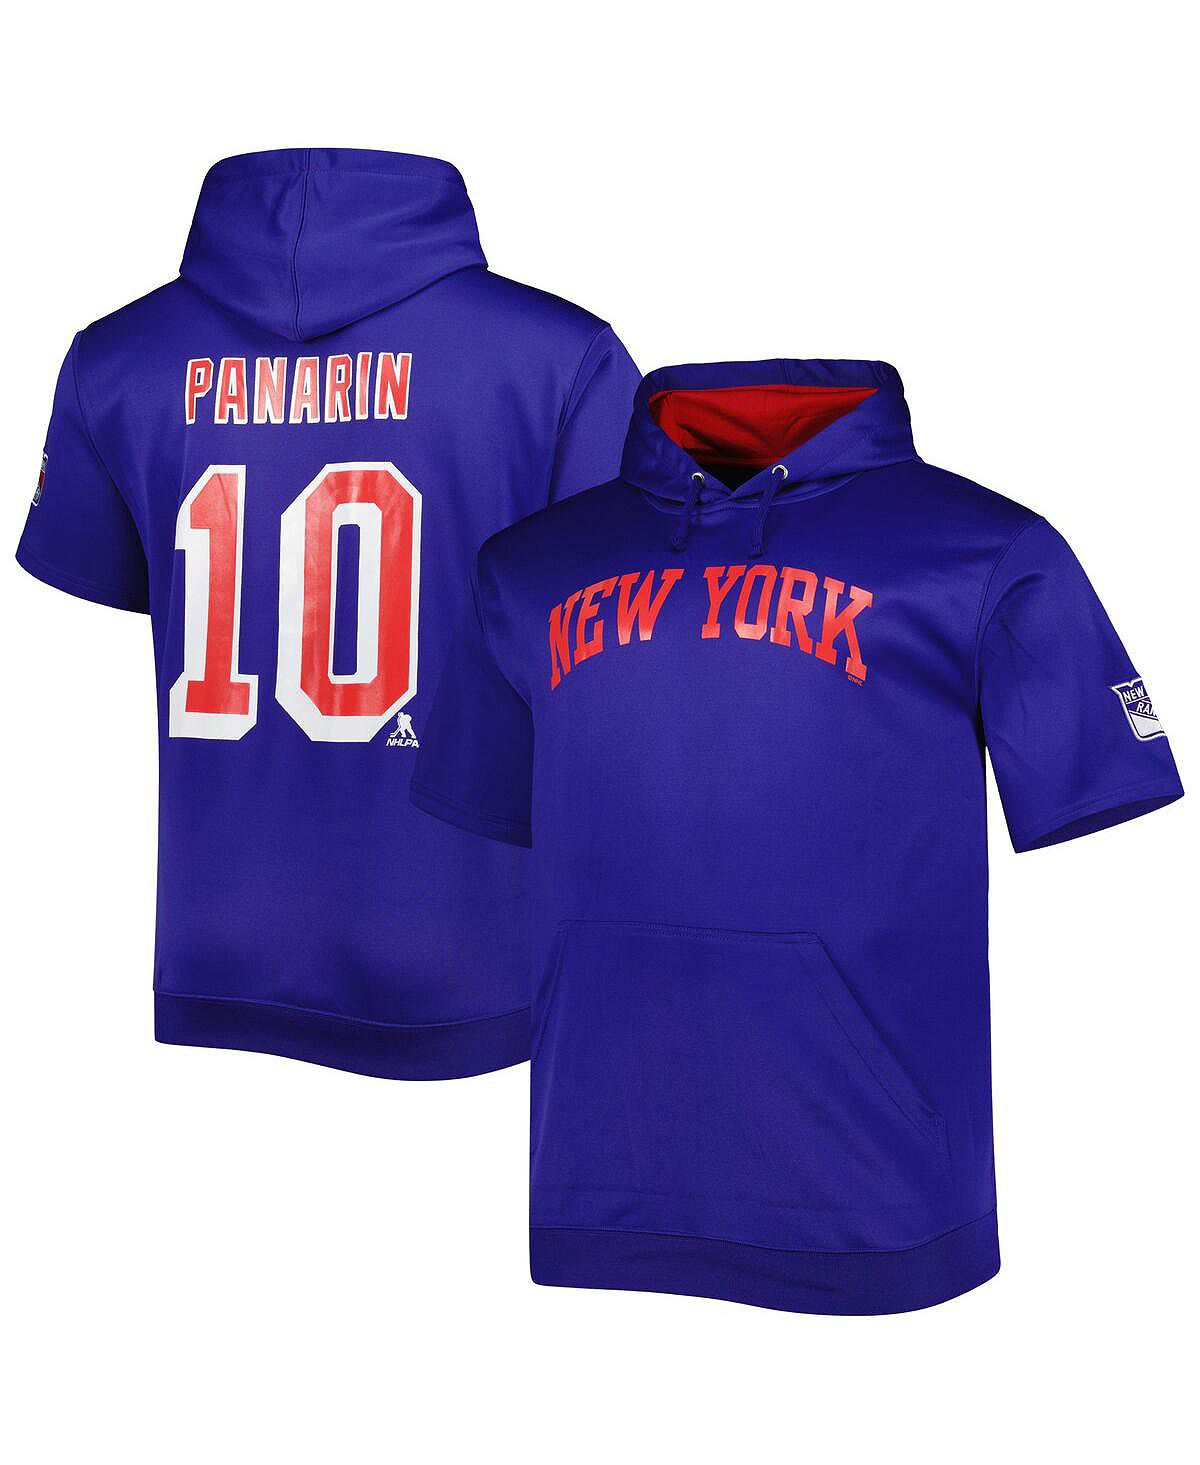 Мужской пуловер с капюшоном синего цвета с фирменным логотипом Artemi Panarin New York Rangers Big and Tall с именем и номером Fanatics шапка fanatics нью йорк рейнджерс